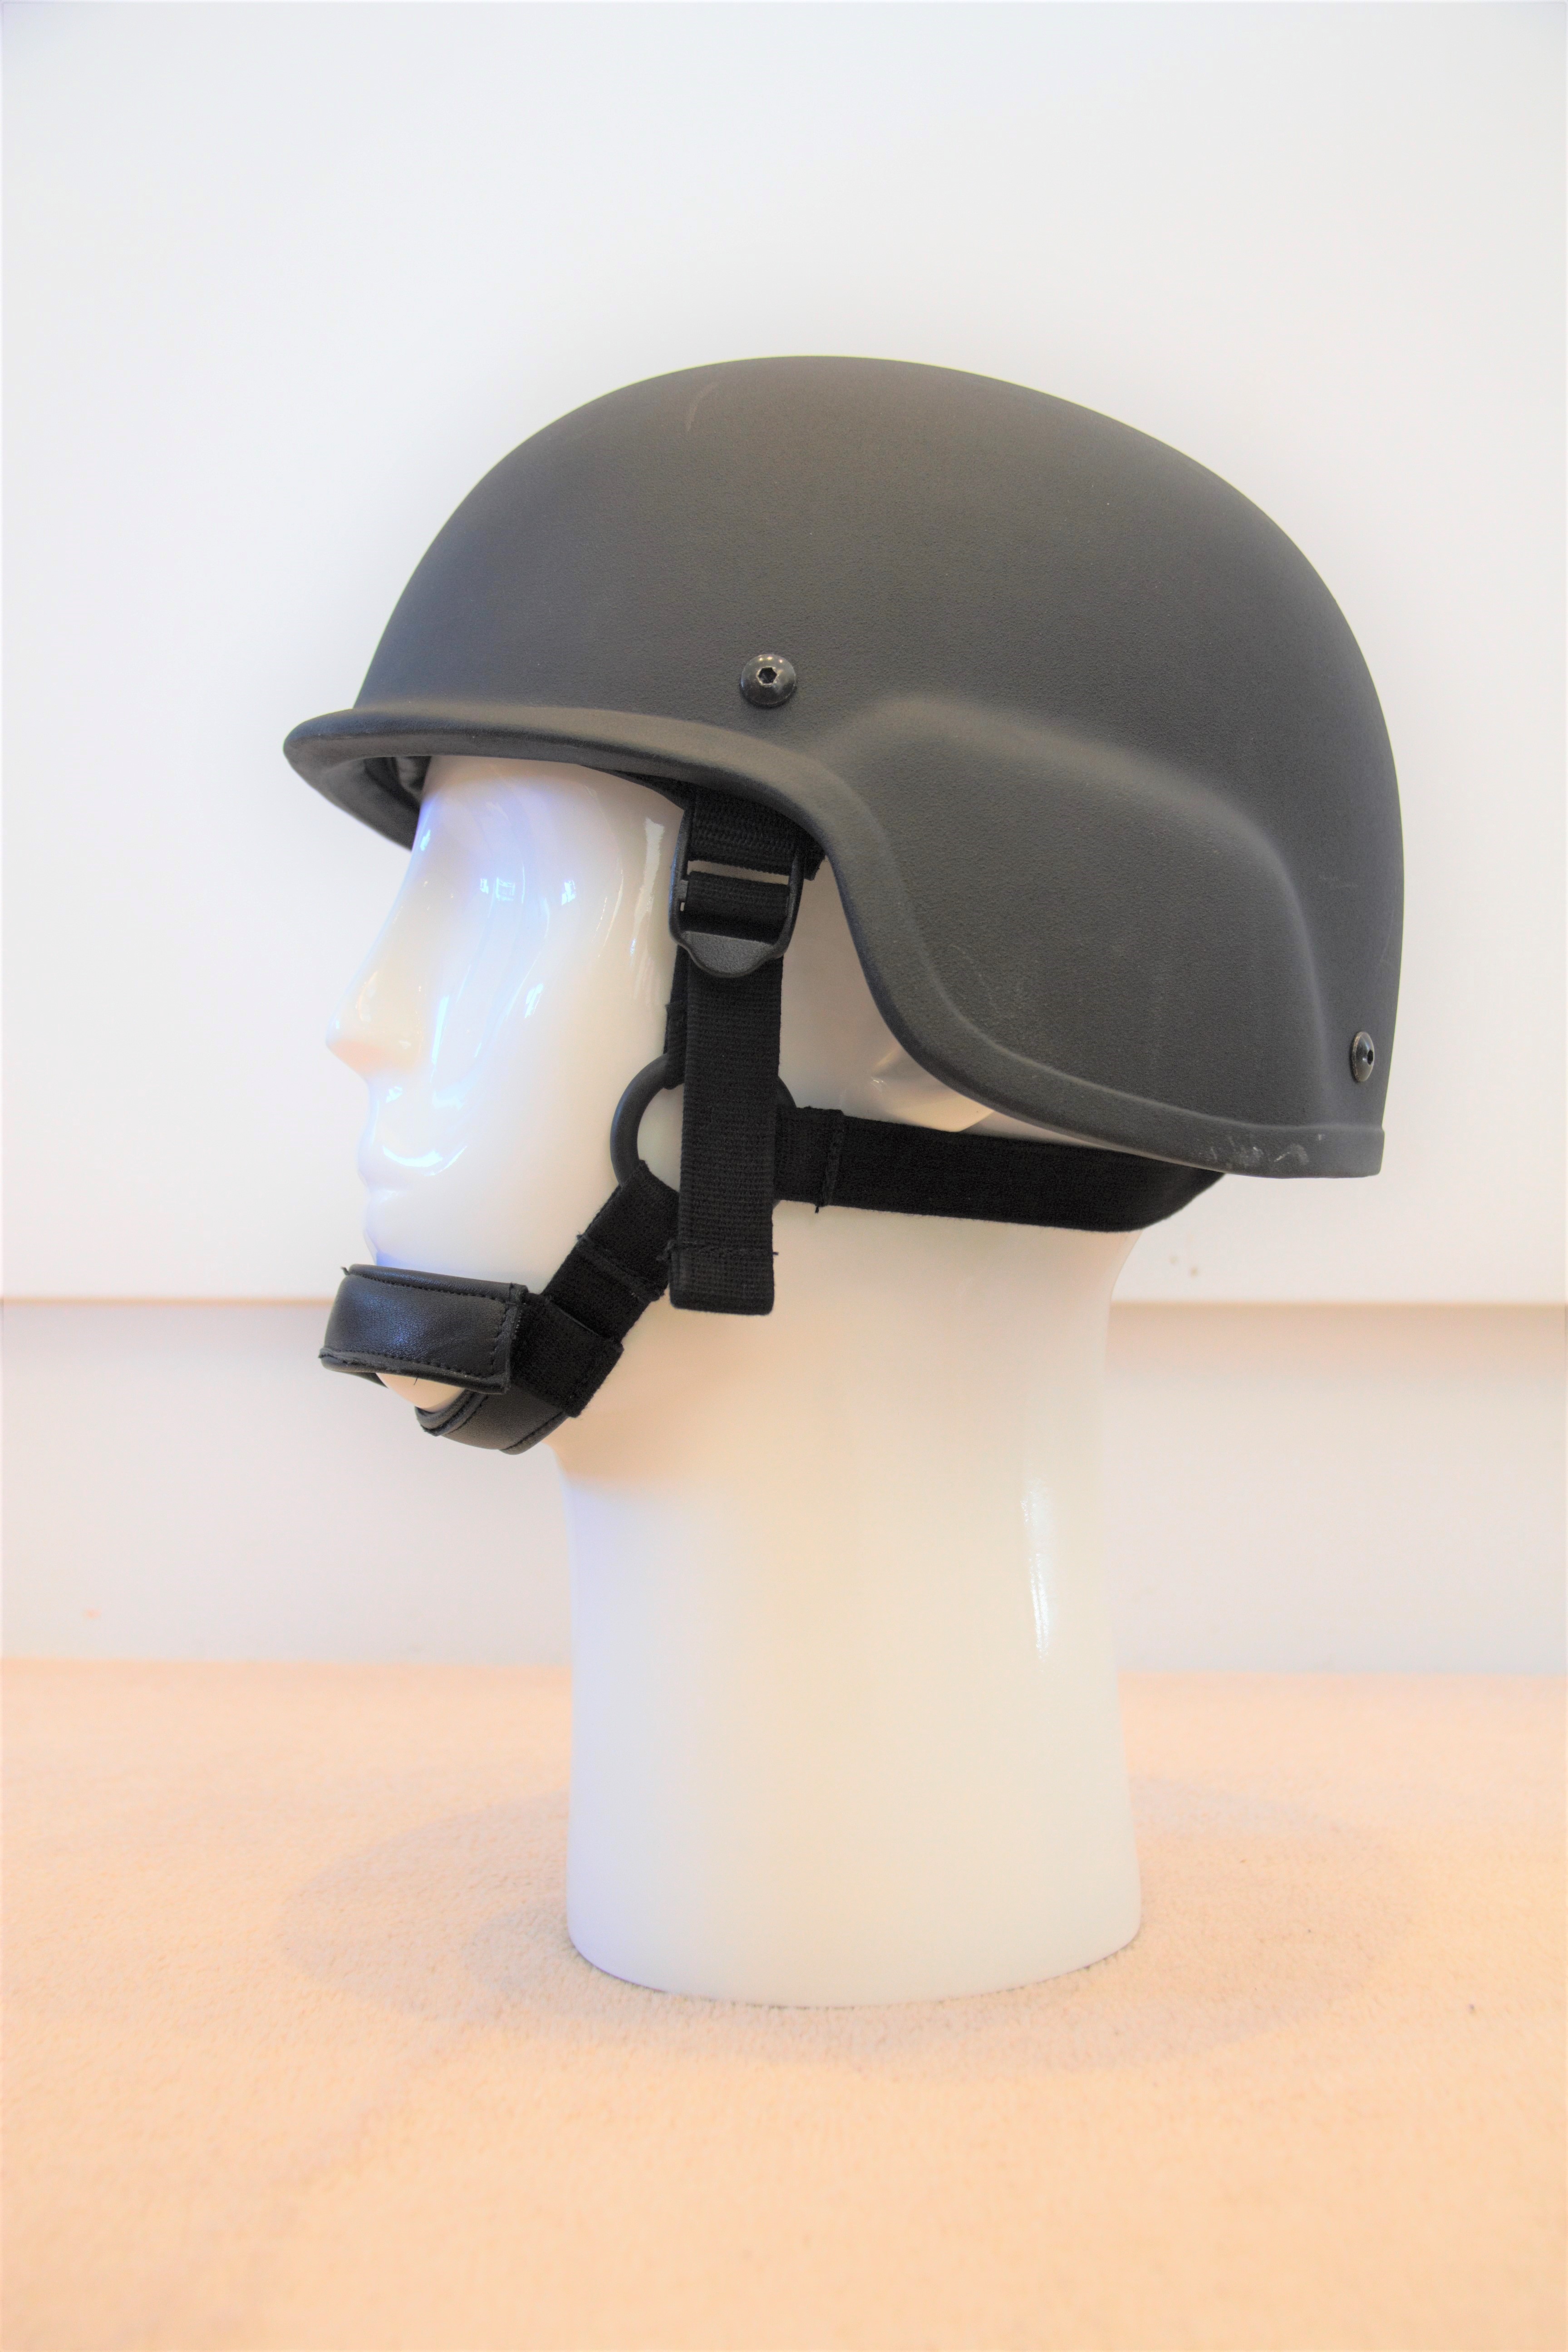 PASGT helmet